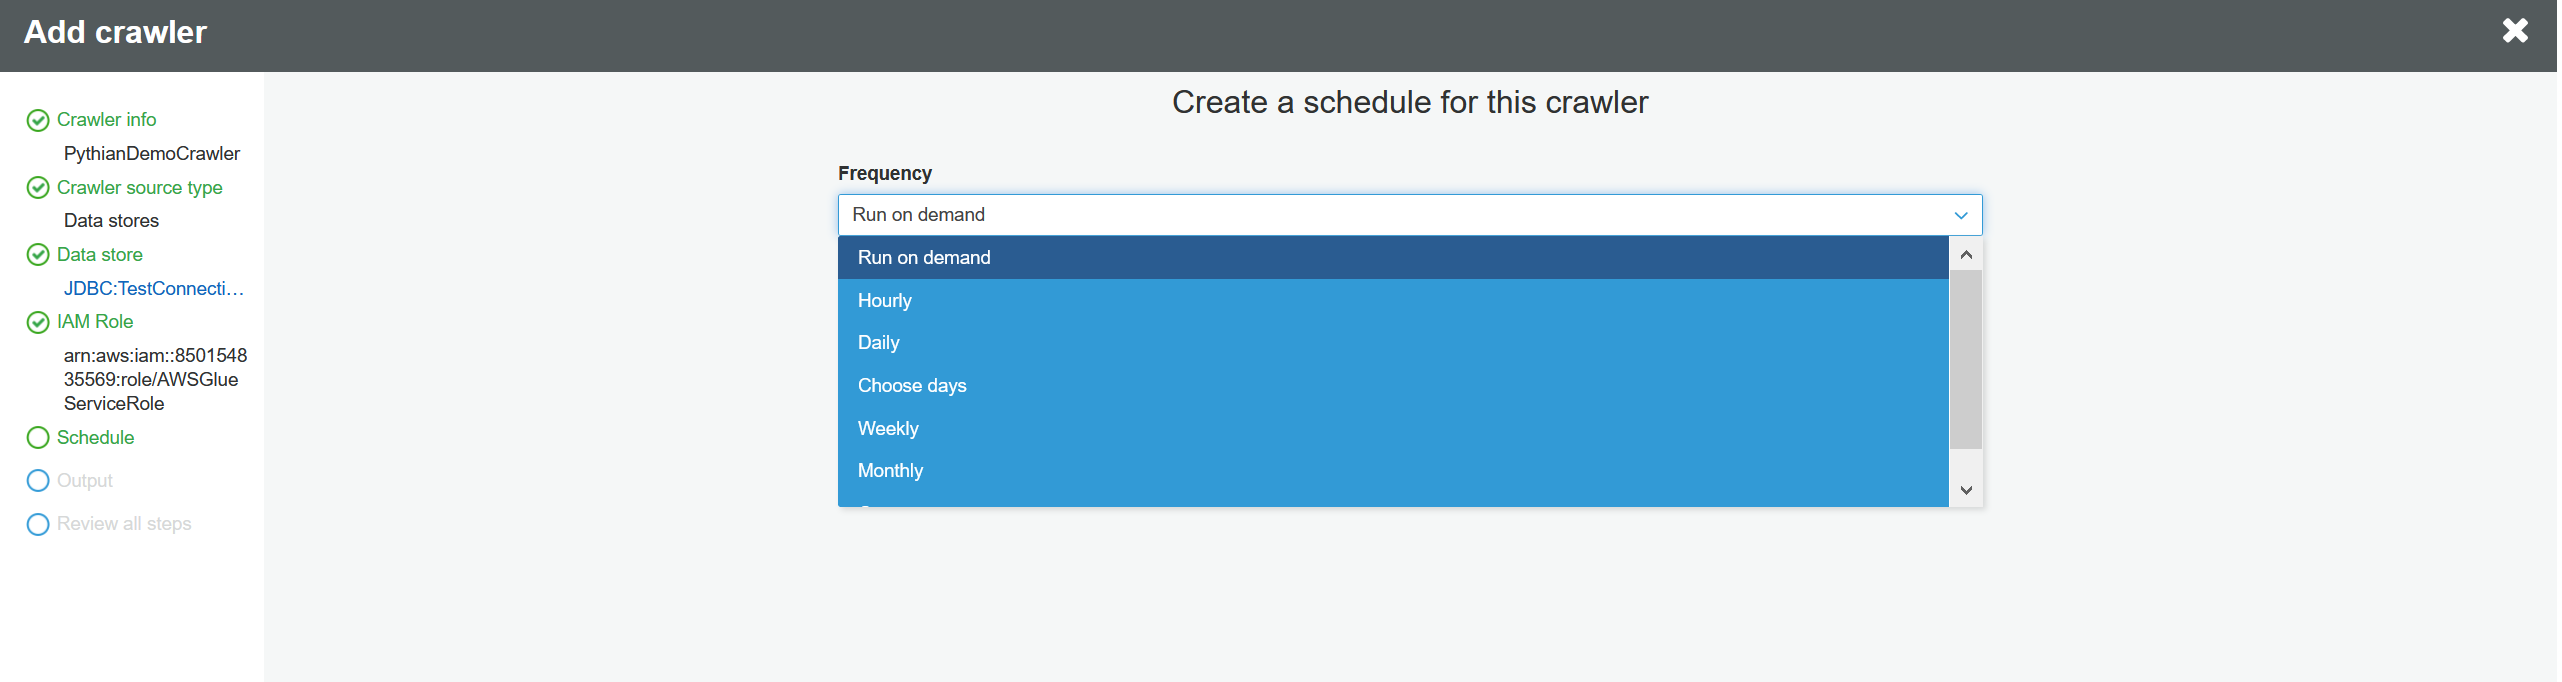 Create a crawler schedule.